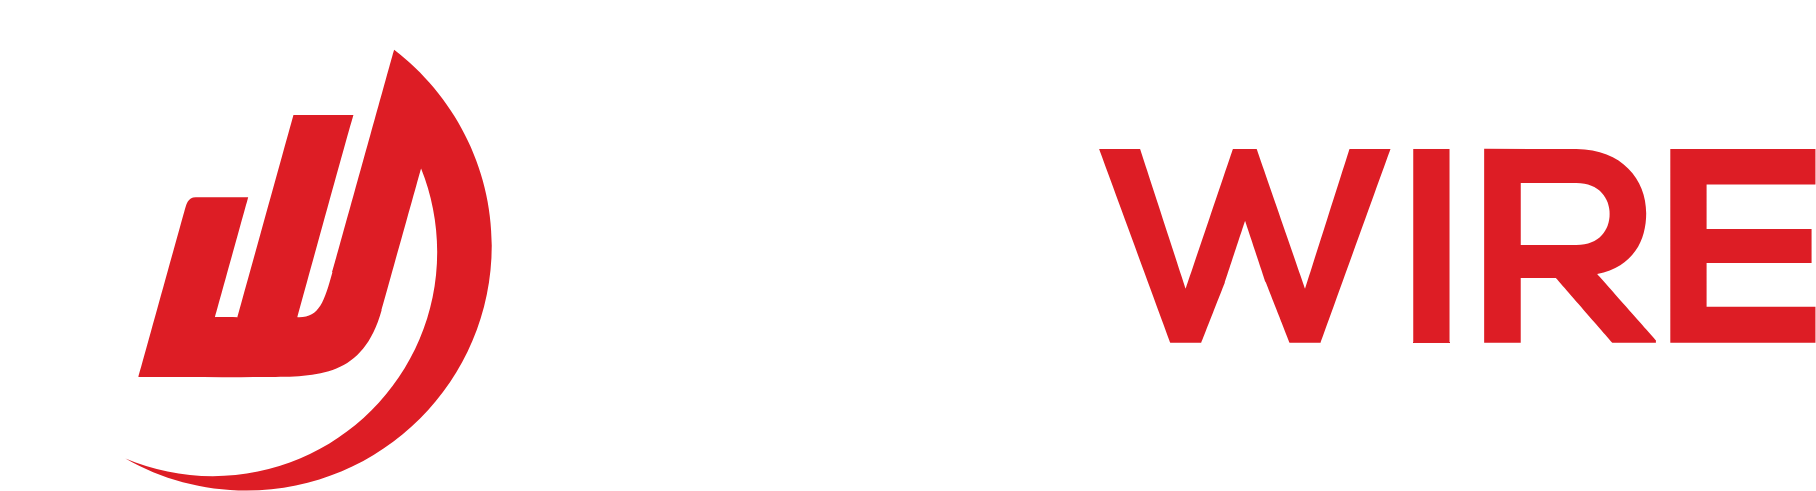 Redwire logo grand pour les fonds sombres (PNG transparent)